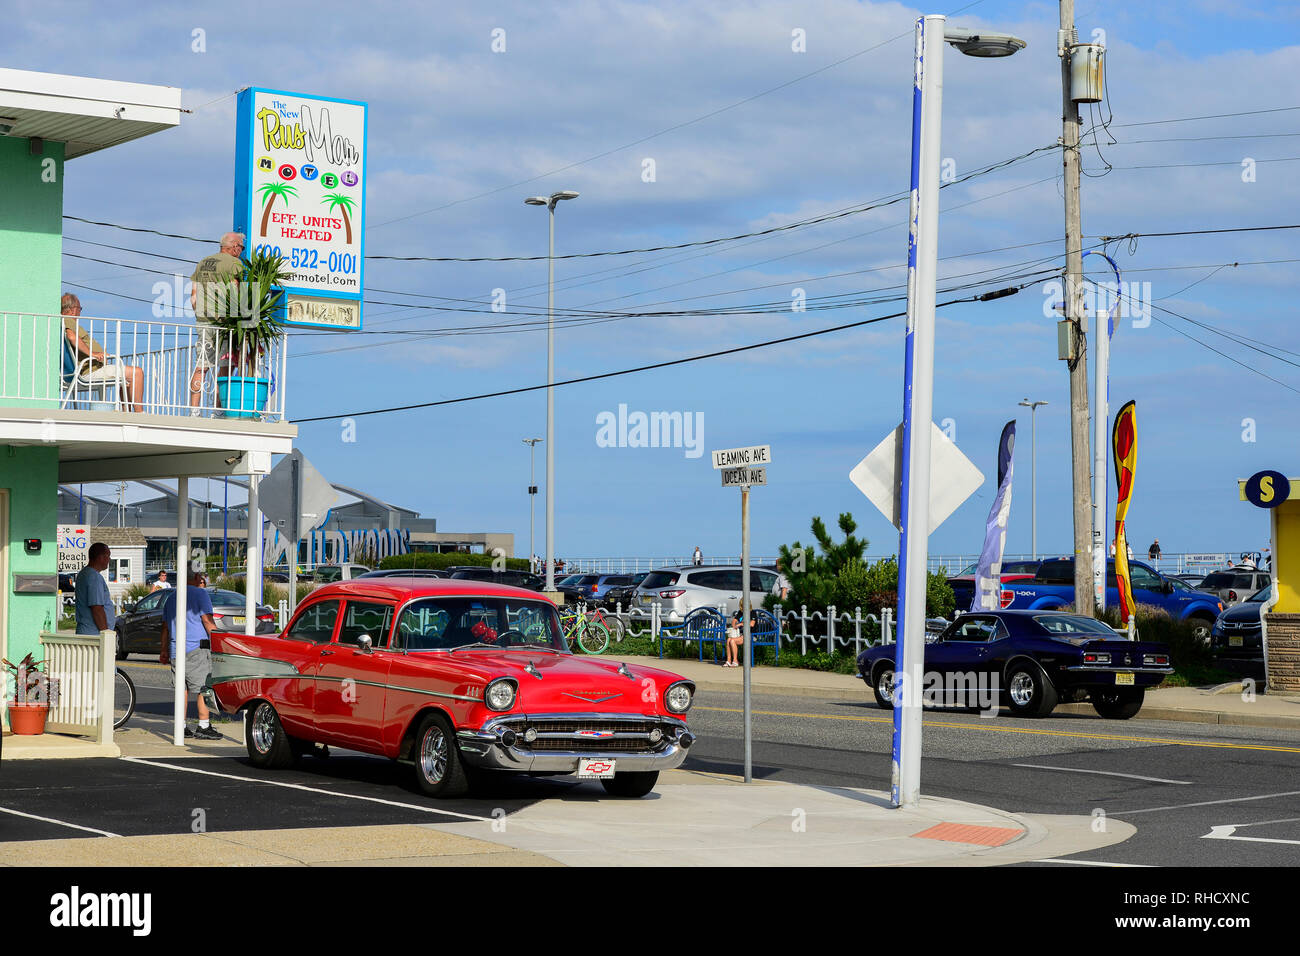 Los Estados Unidos, Nueva Jersey, Wildwood, desfile de coches clásicos, GM General Motors Chevrolet Bel Air en lugar de aparcamiento del Motel Rusmar en Ocean Ave, podría estar en la Habana Cuba demasiado Foto de stock